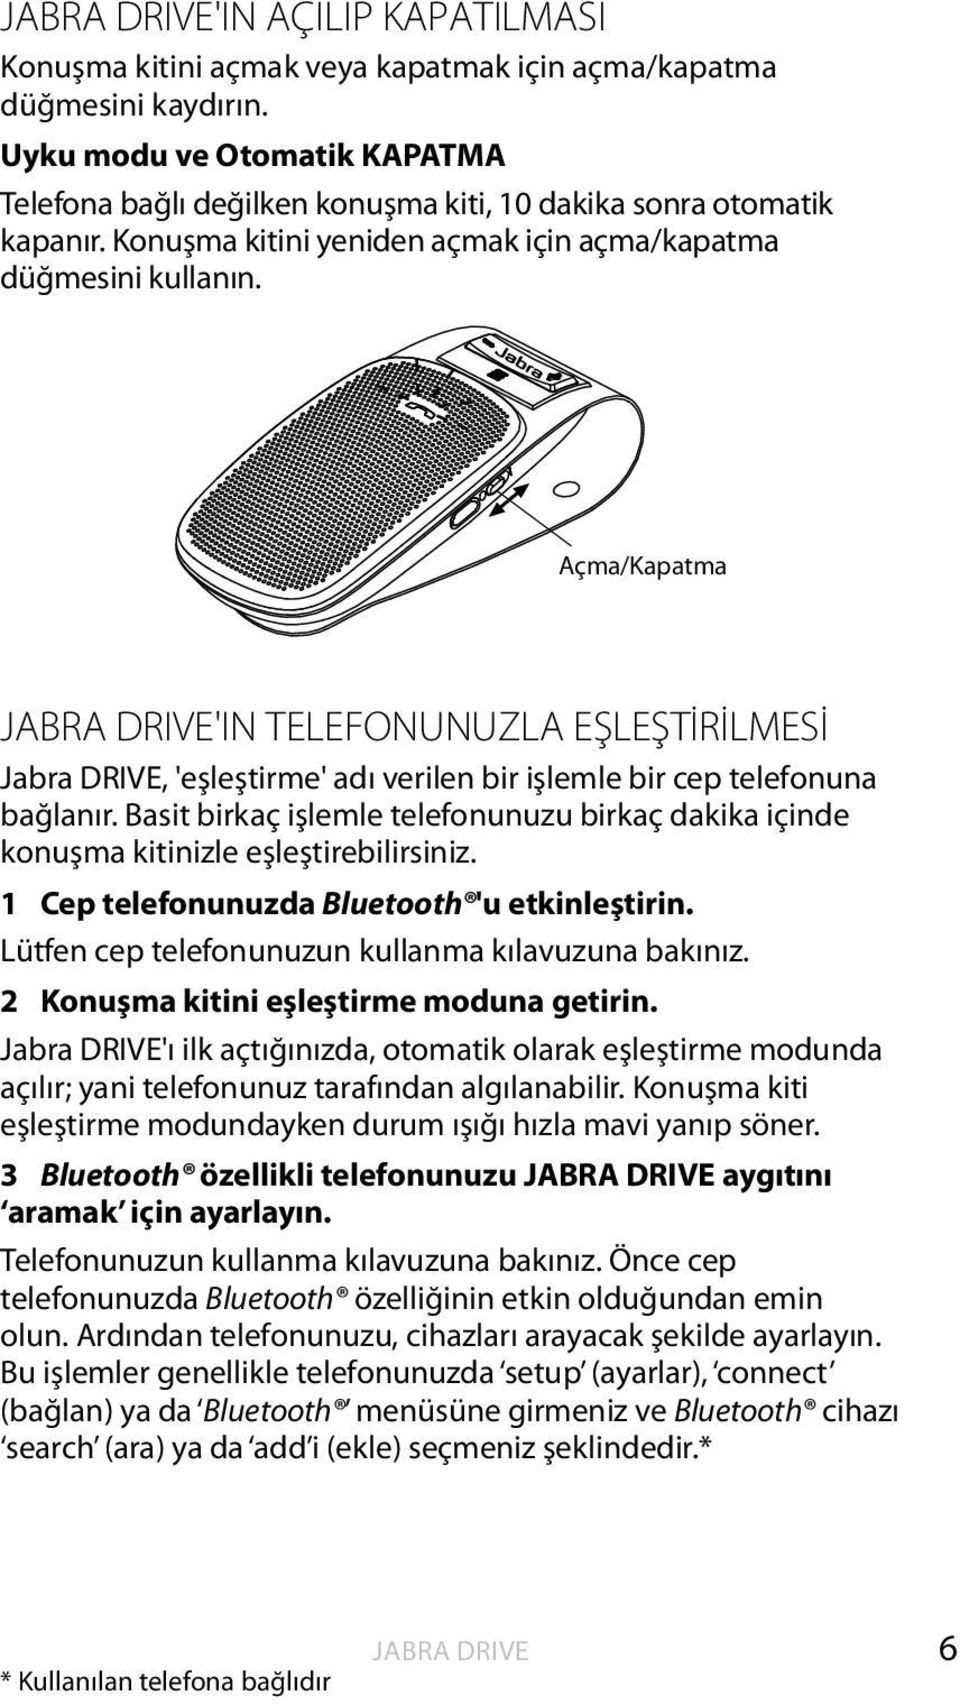 Açma/Kapatma JABRA DRIVE'IN TELEFONUNUZLA EŞLEŞTİRİLMESİ, 'eşleştirme' adı verilen bir işlemle bir cep telefonuna bağlanır.